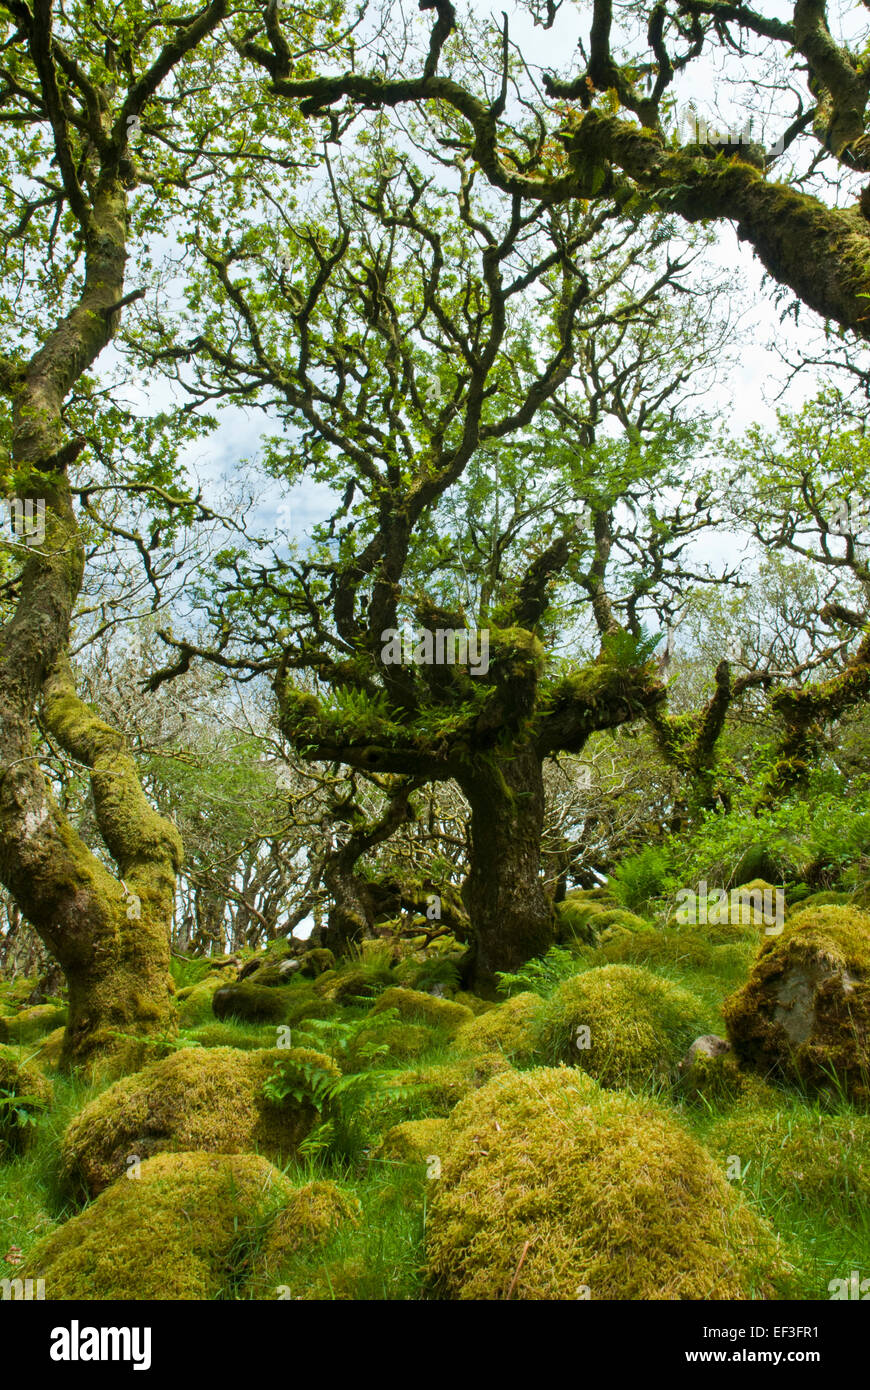 Wistman il legno, Dartmoor Devon UK. Nodose antica quercia nana e massi di granito coperte in verdeggianti muschi e felci. Foto Stock